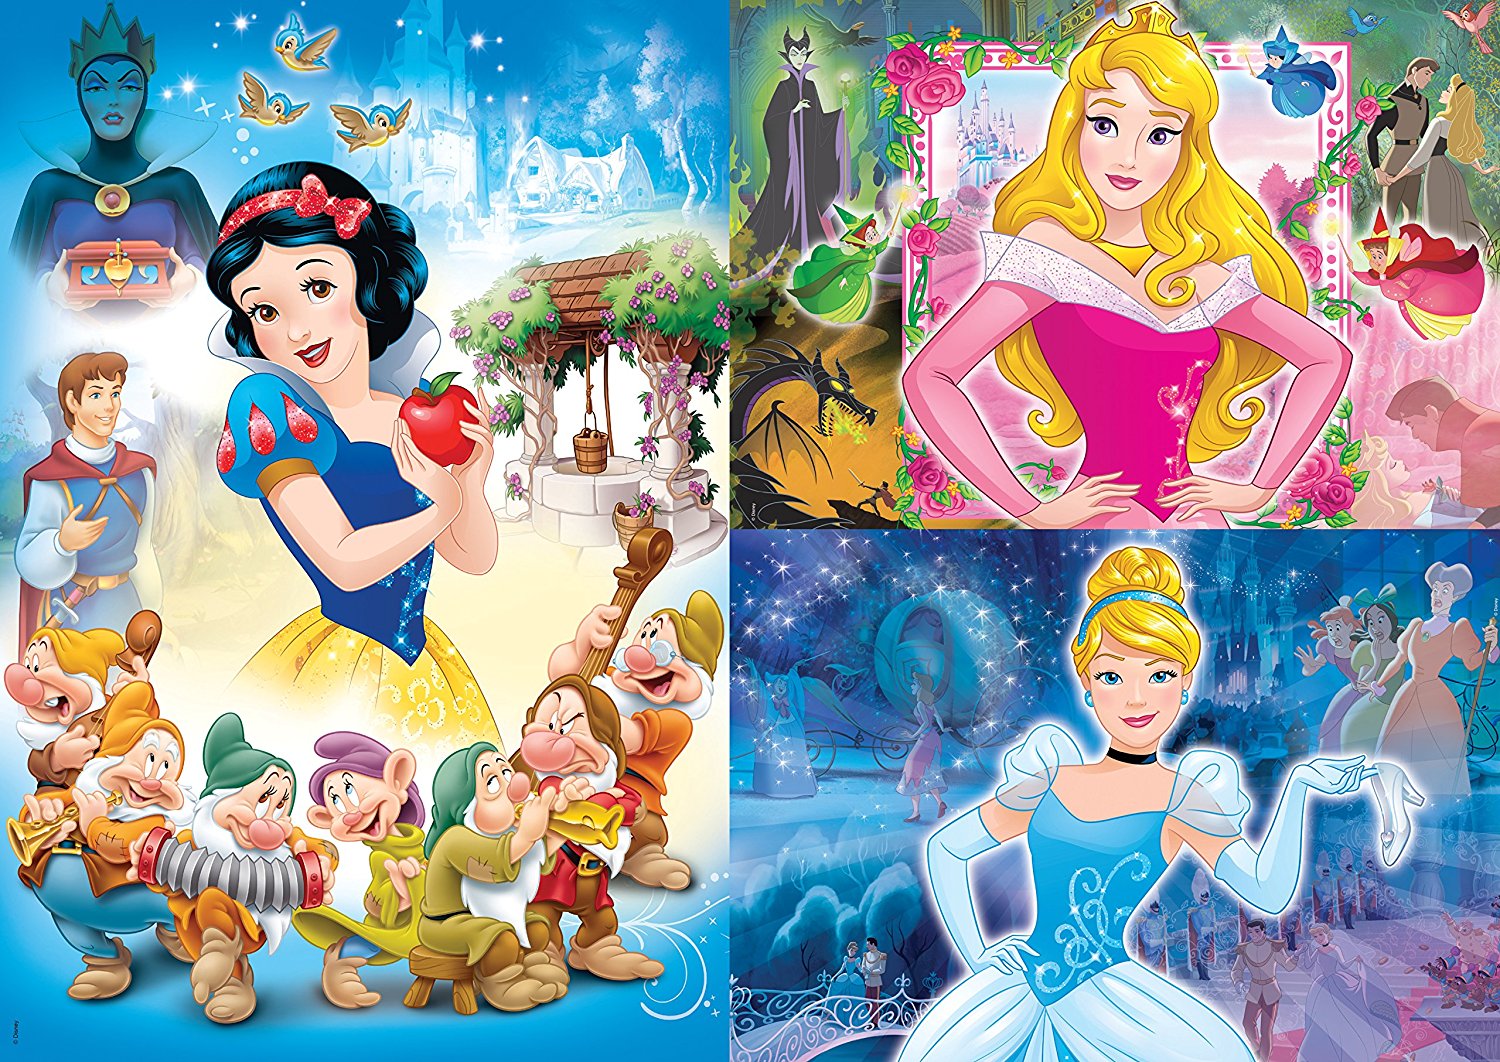 Puzzle cadre 30-48 p - Nous sommes les princesses Disney